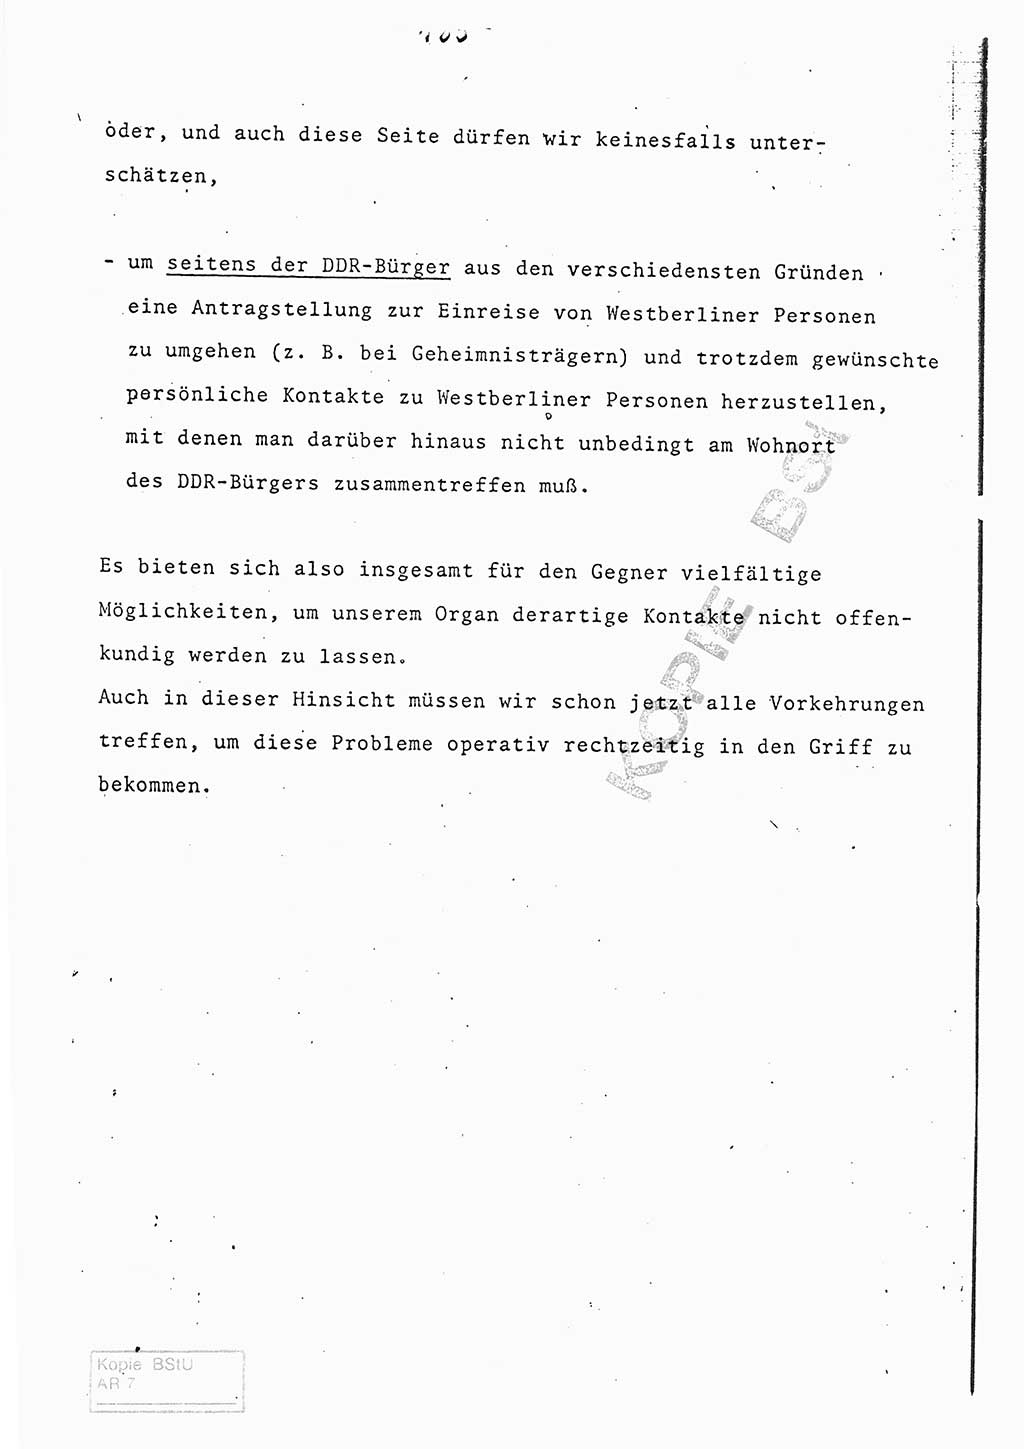 Referat (Entwurf) des Genossen Minister (Generaloberst Erich Mielke) auf der Dienstkonferenz 1972, Ministerium für Staatssicherheit (MfS) [Deutsche Demokratische Republik (DDR)], Der Minister, Geheime Verschlußsache (GVS) 008-150/72, Berlin 25.2.1972, Seite 185 (Ref. Entw. DK MfS DDR Min. GVS 008-150/72 1972, S. 185)